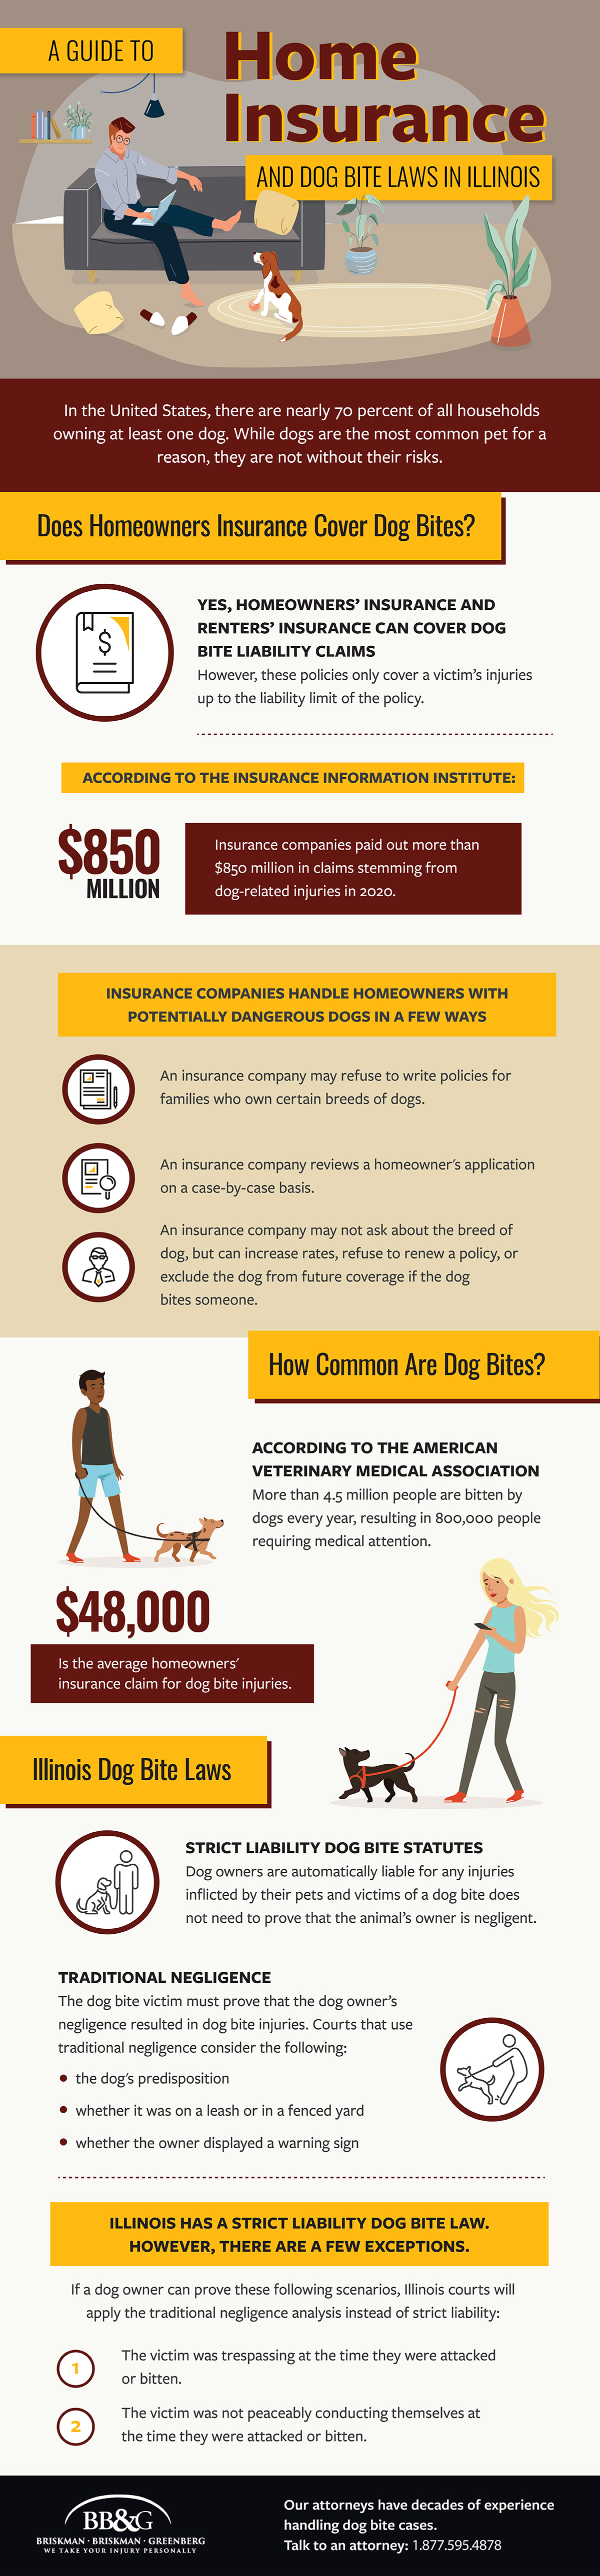 Guía sobre el seguro de hogar y las leyes sobre mordeduras de perro en Illinois